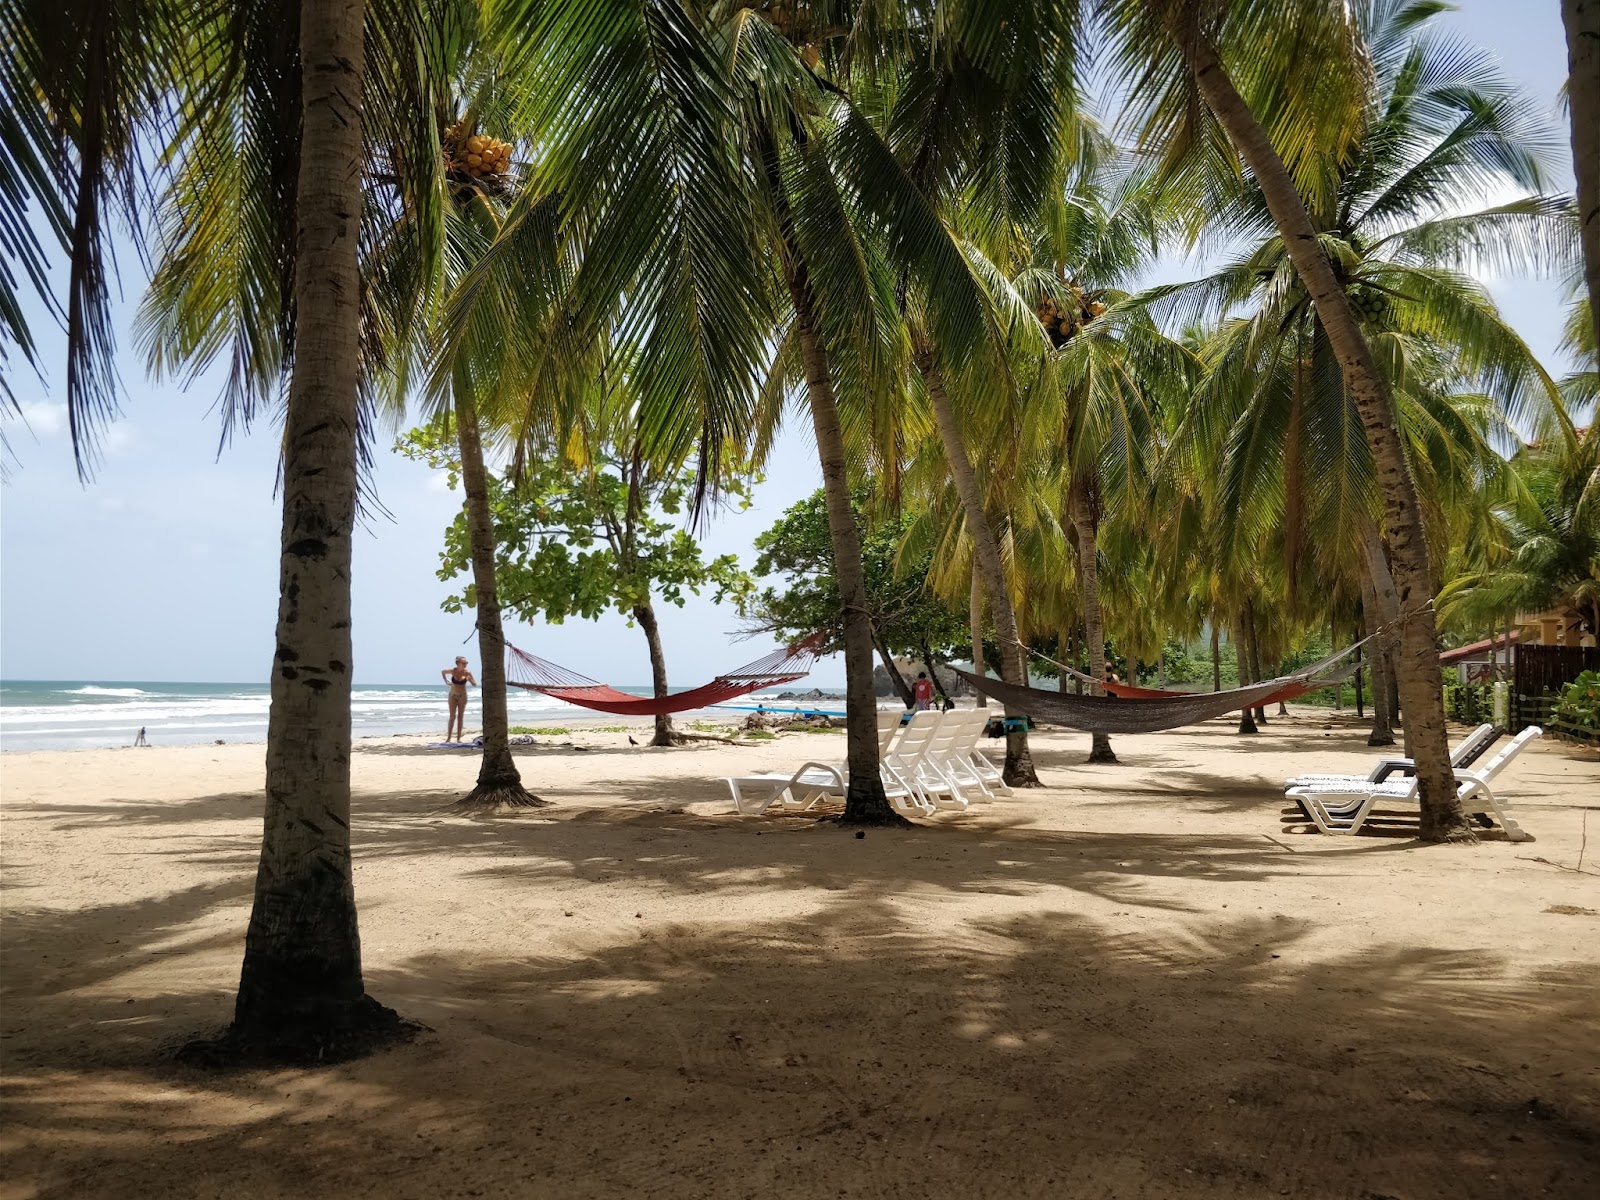 Foto af Playa Grande - populært sted blandt afslapningskendere